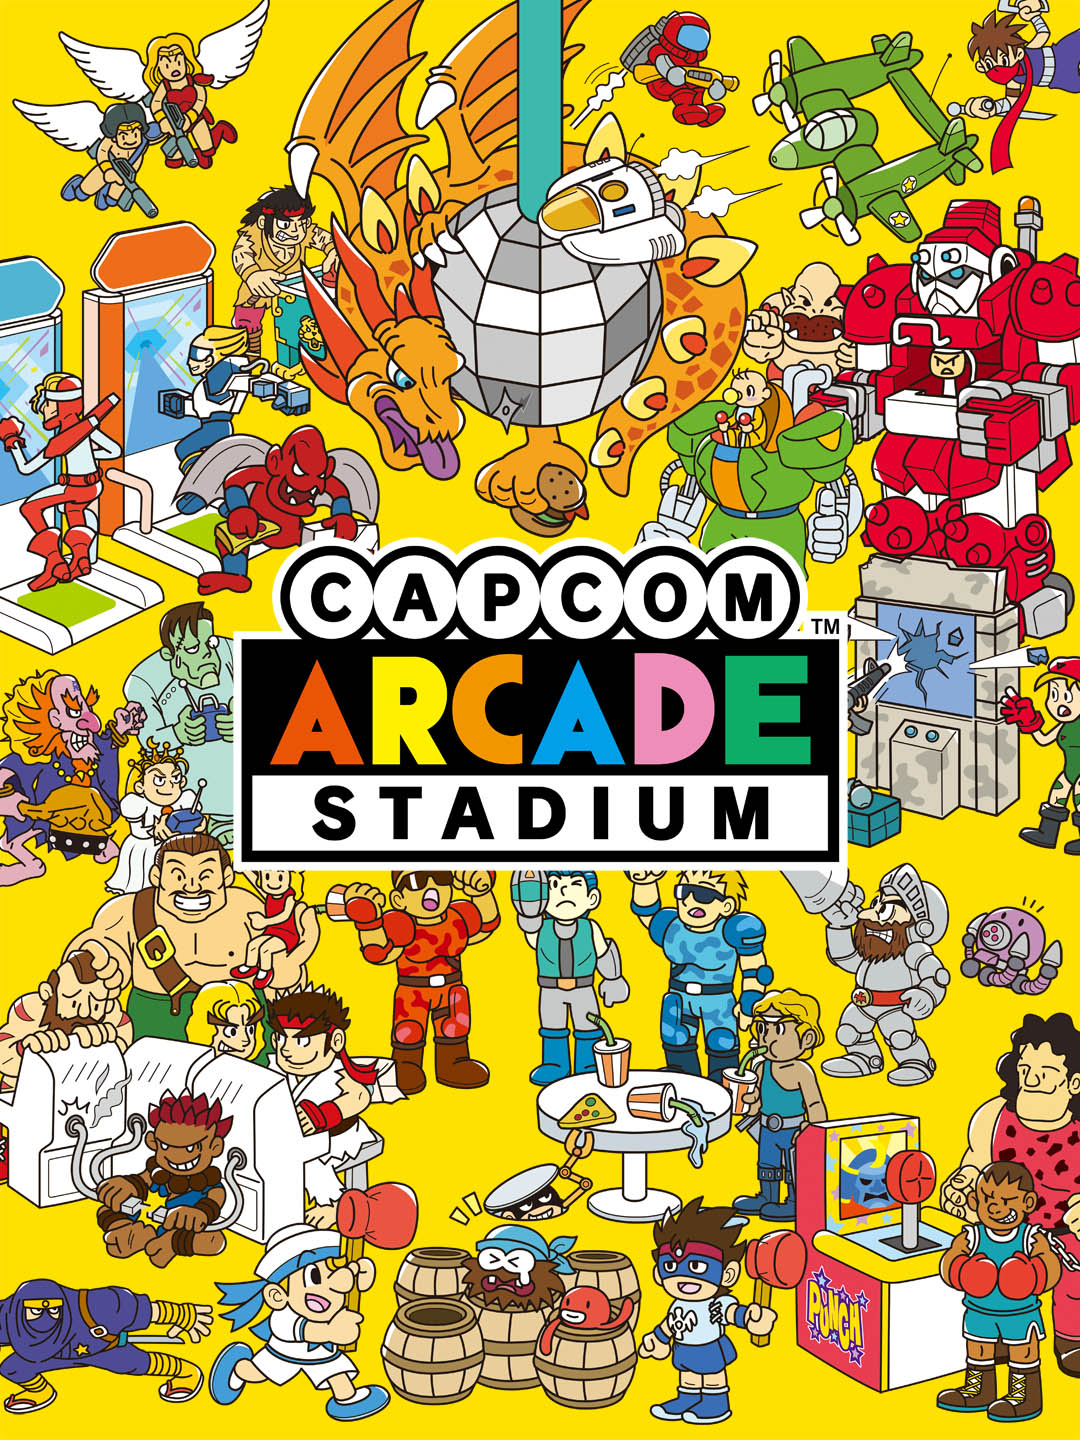 Arcade stadium. Capcom Arcade Stadium. Capcom Arcade Stadium ps4. Capcom Arcade Stadium Nintendo Switch. Capcom Arcade Stadium Arts.